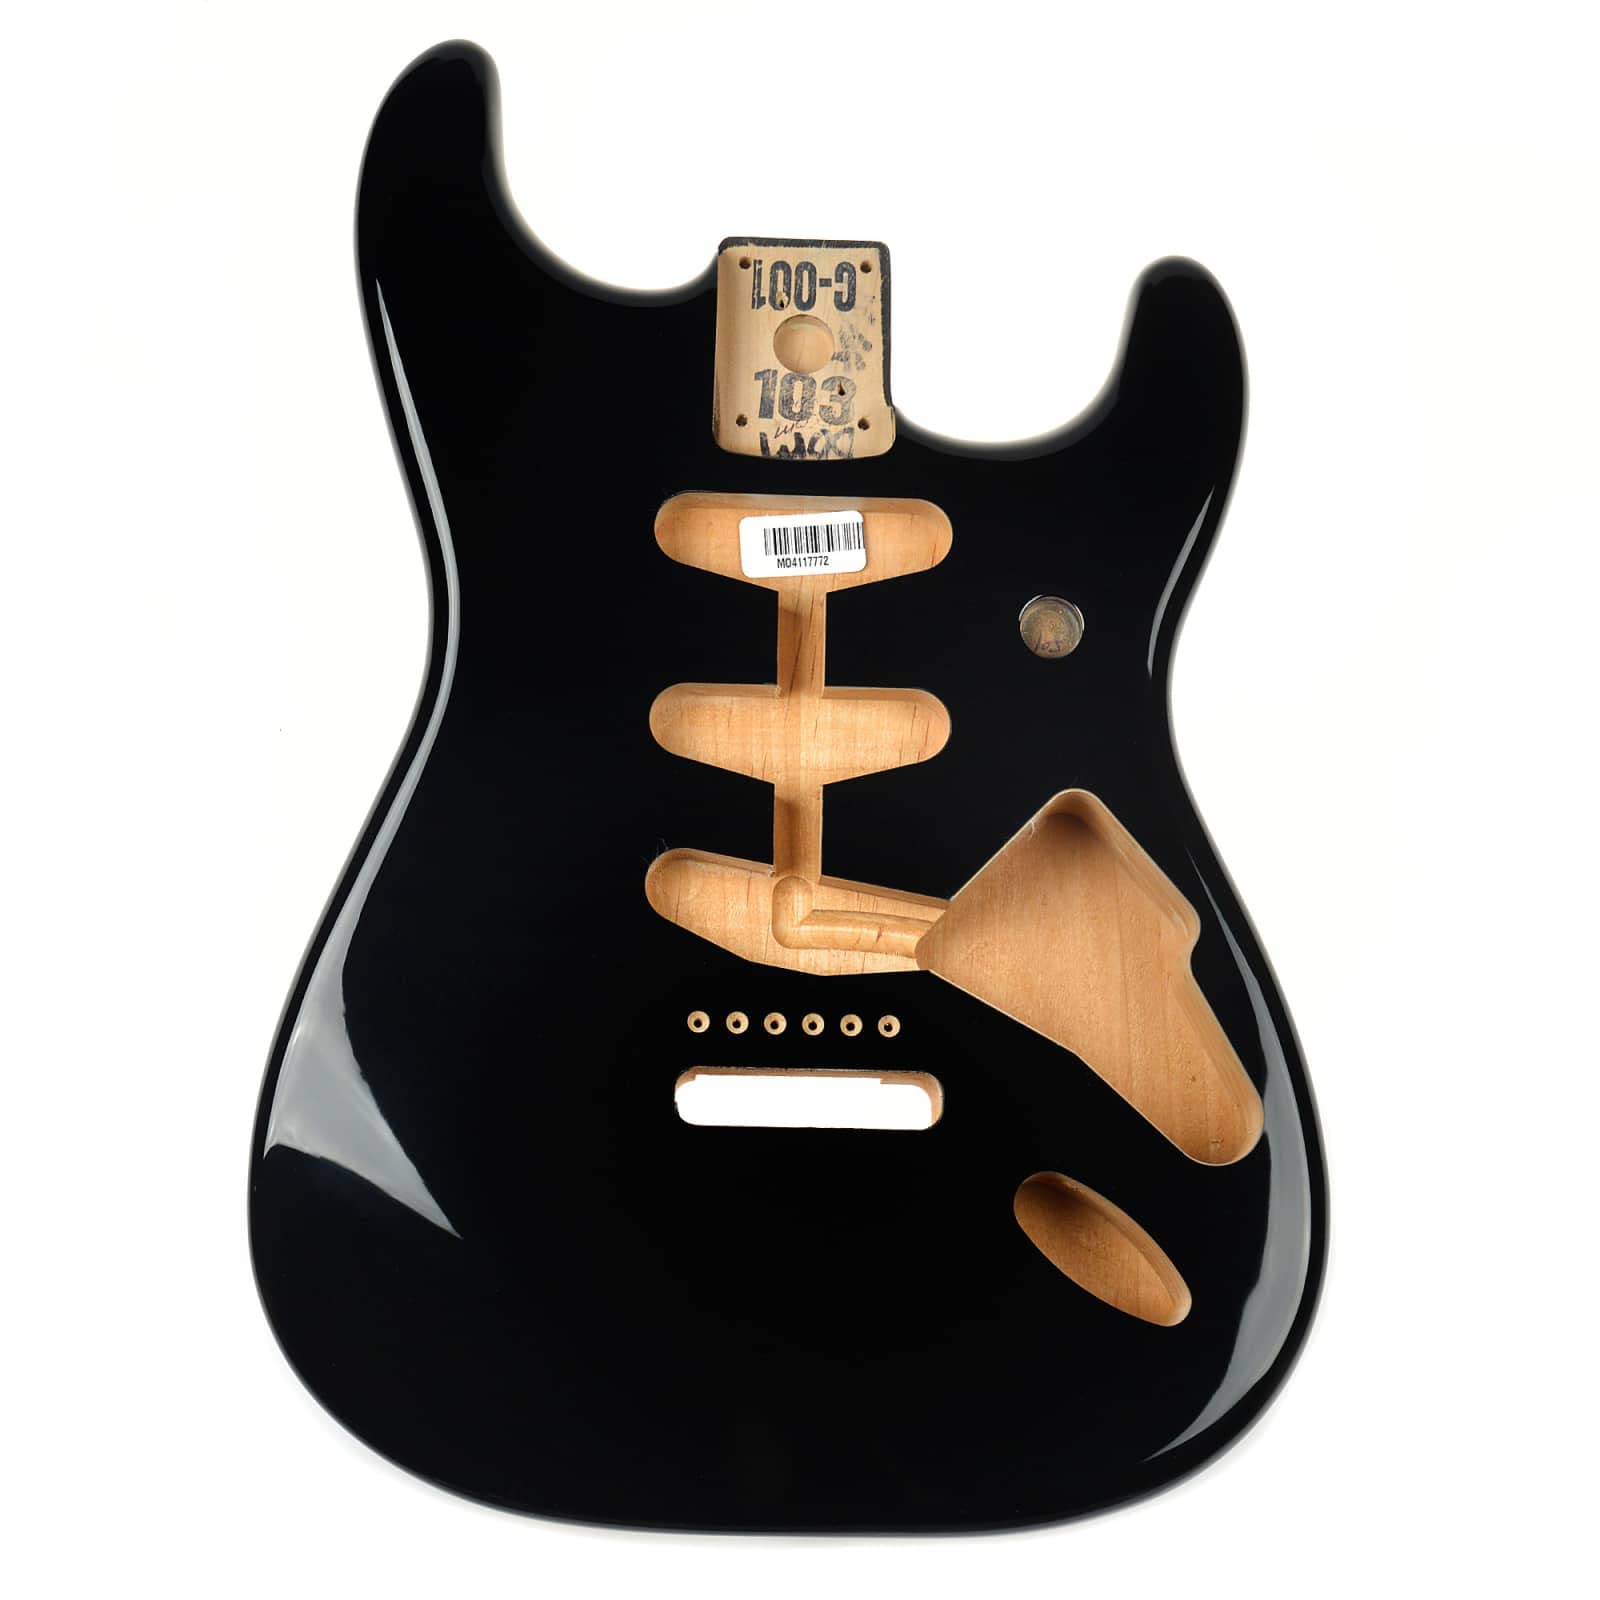 Fender جسم Alder Stratocaster - توجيه جسر عتيق - 3 ألوان Sunburst